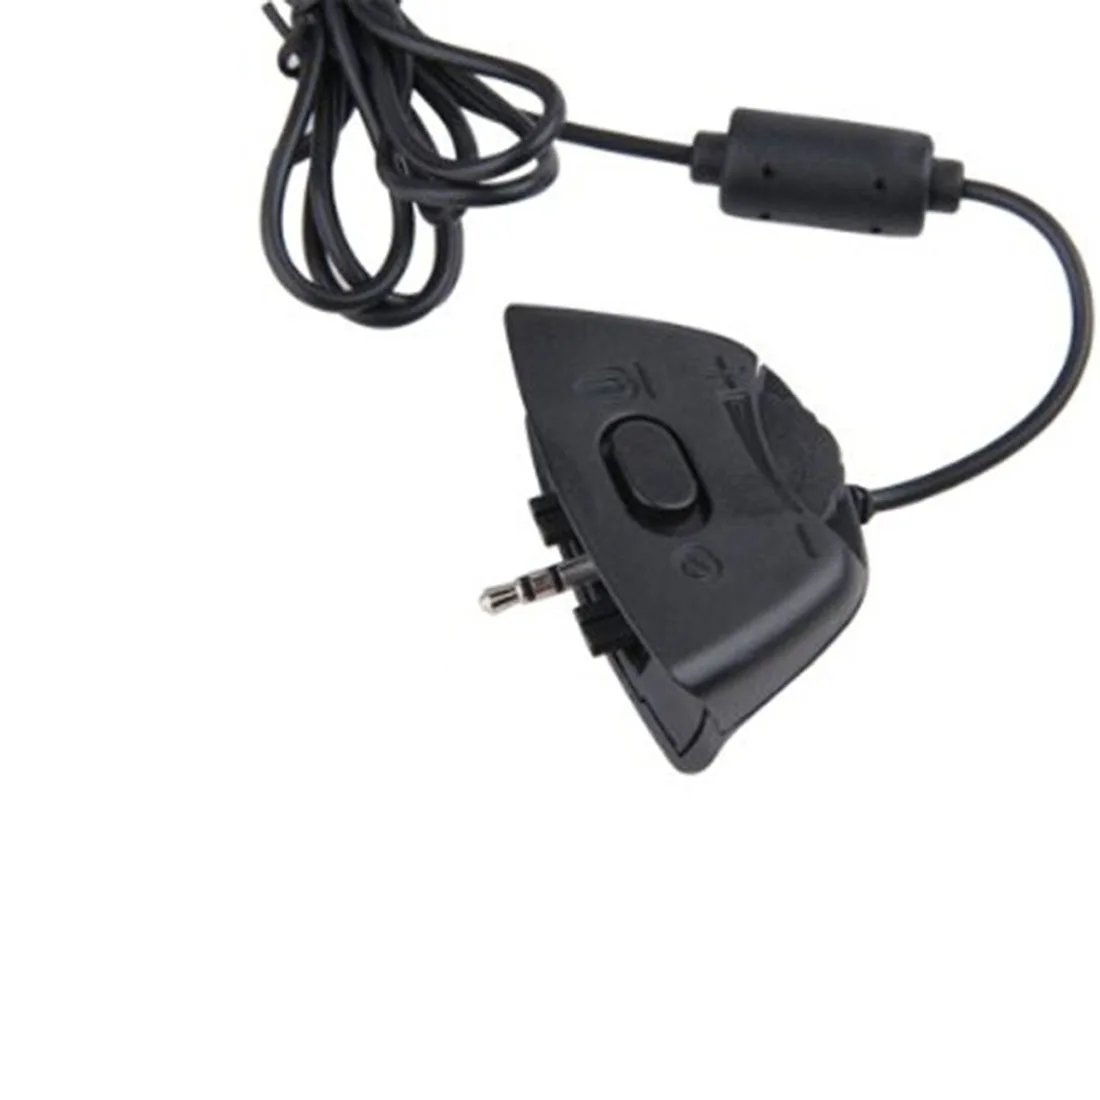 Marsnaska черный видео игра гарнитура на одно ухо наушники с микрофоном Микрофон для Xbox 360 Xbox360